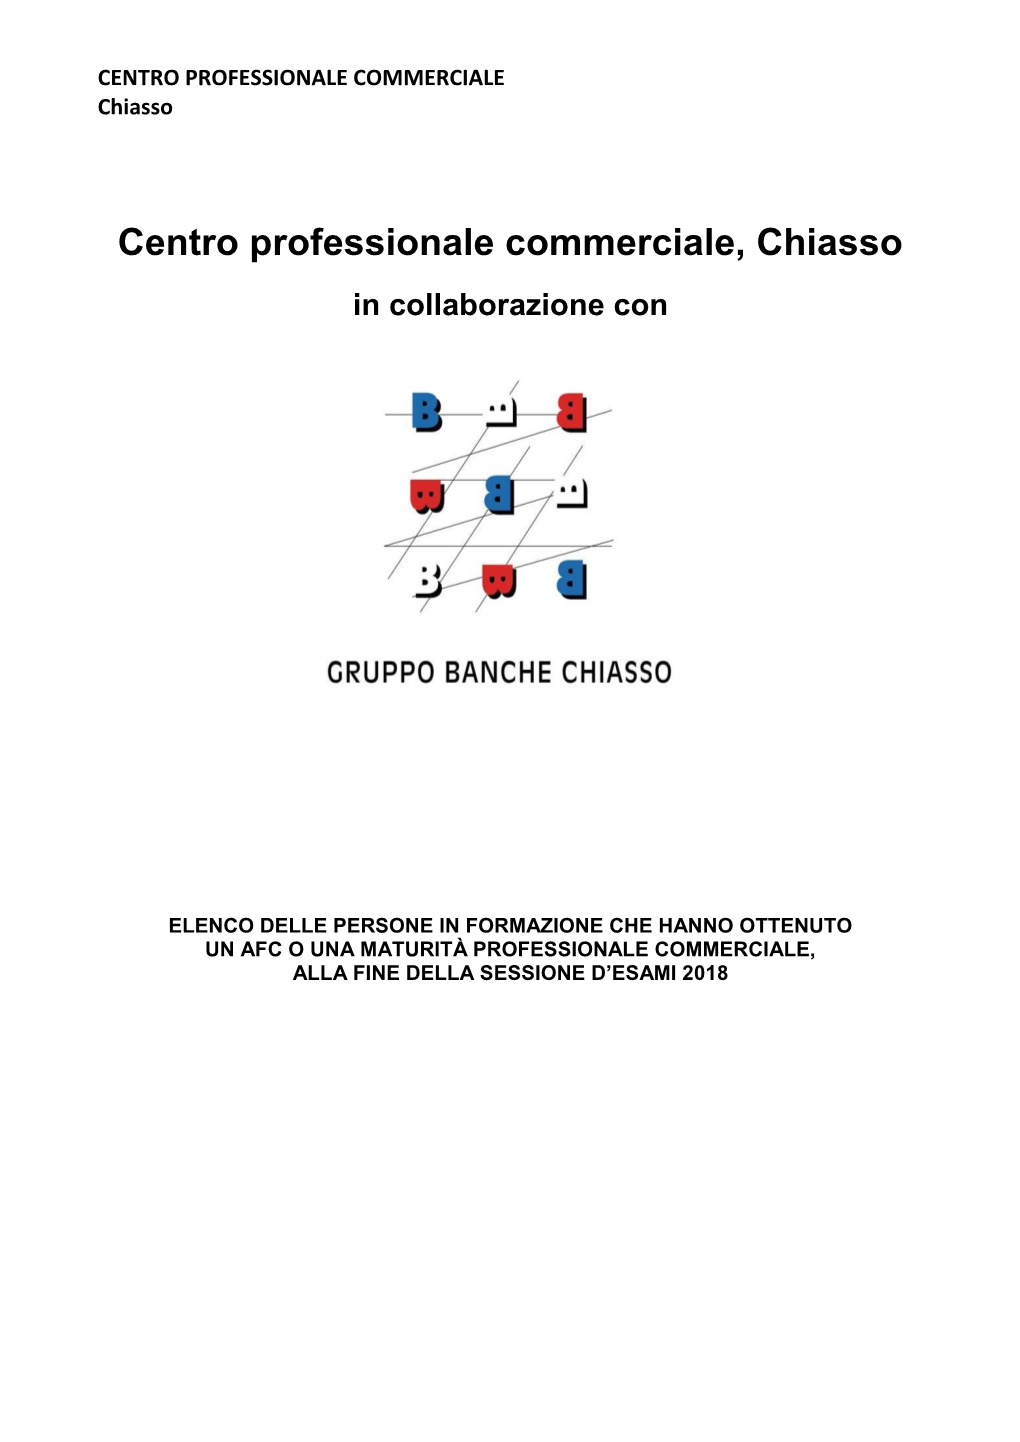 Centro Professionale Commerciale, Chiasso